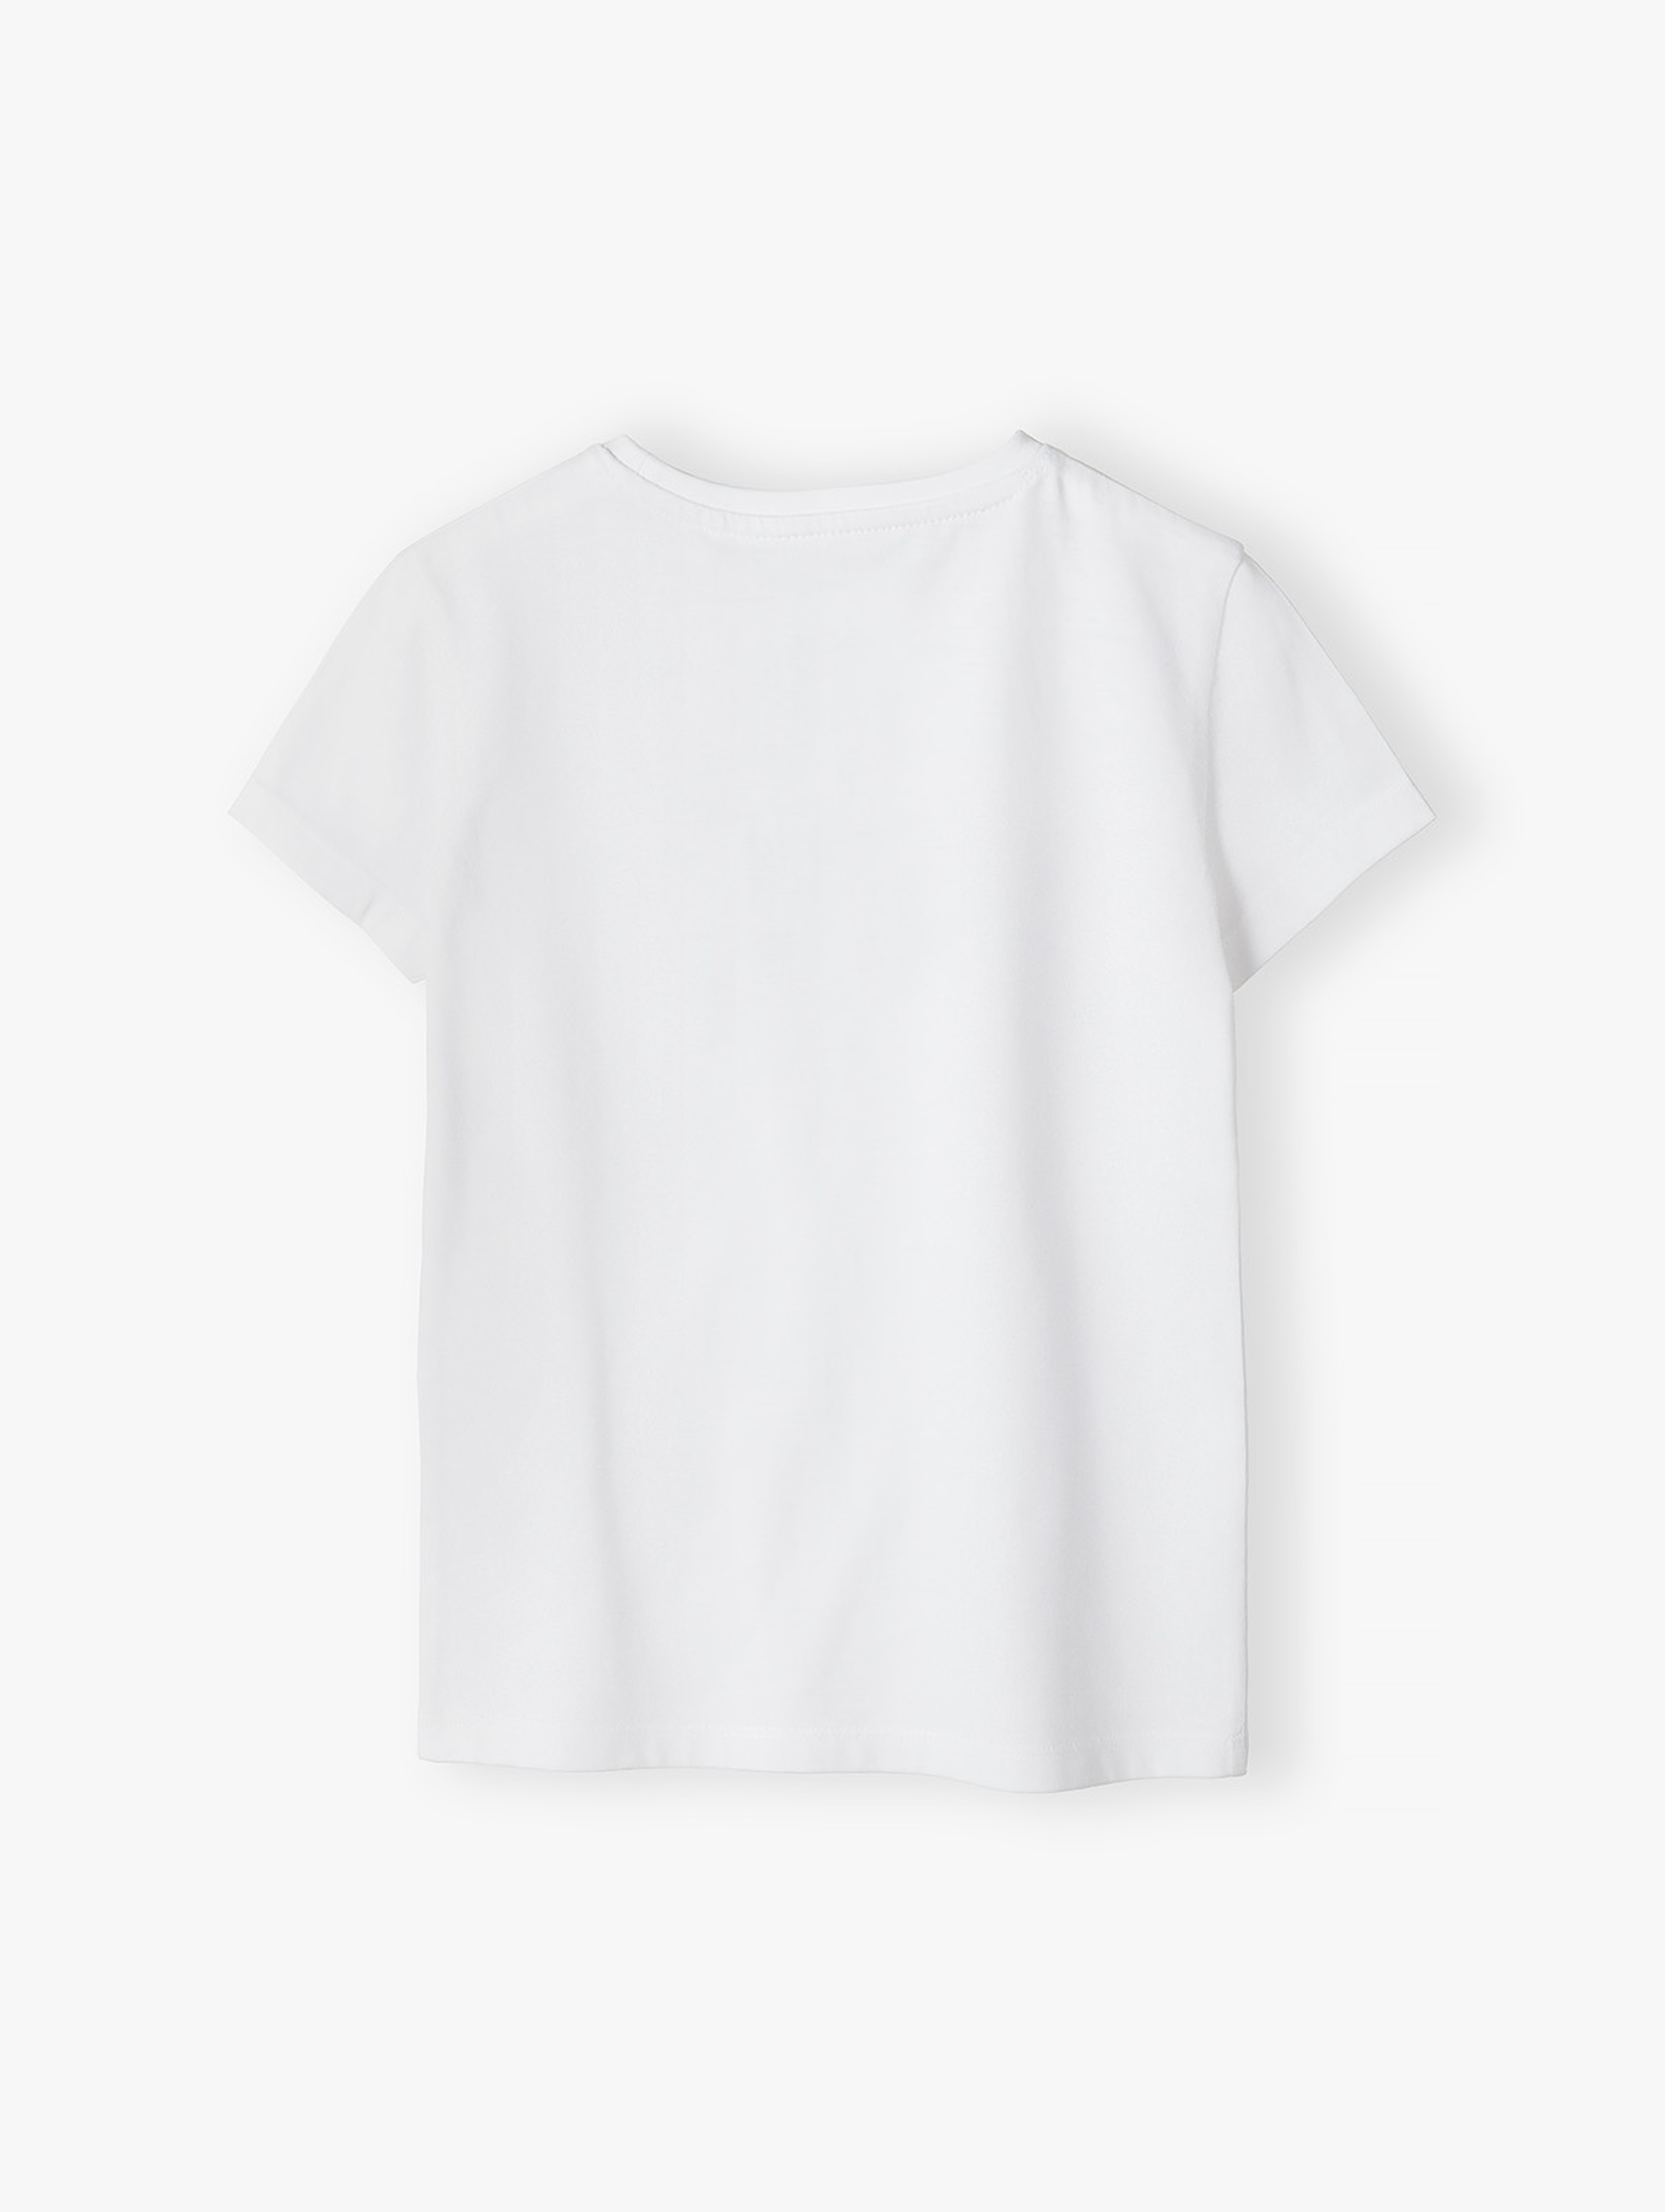 T-shirt dziewczęcy biały z napisem - SIS